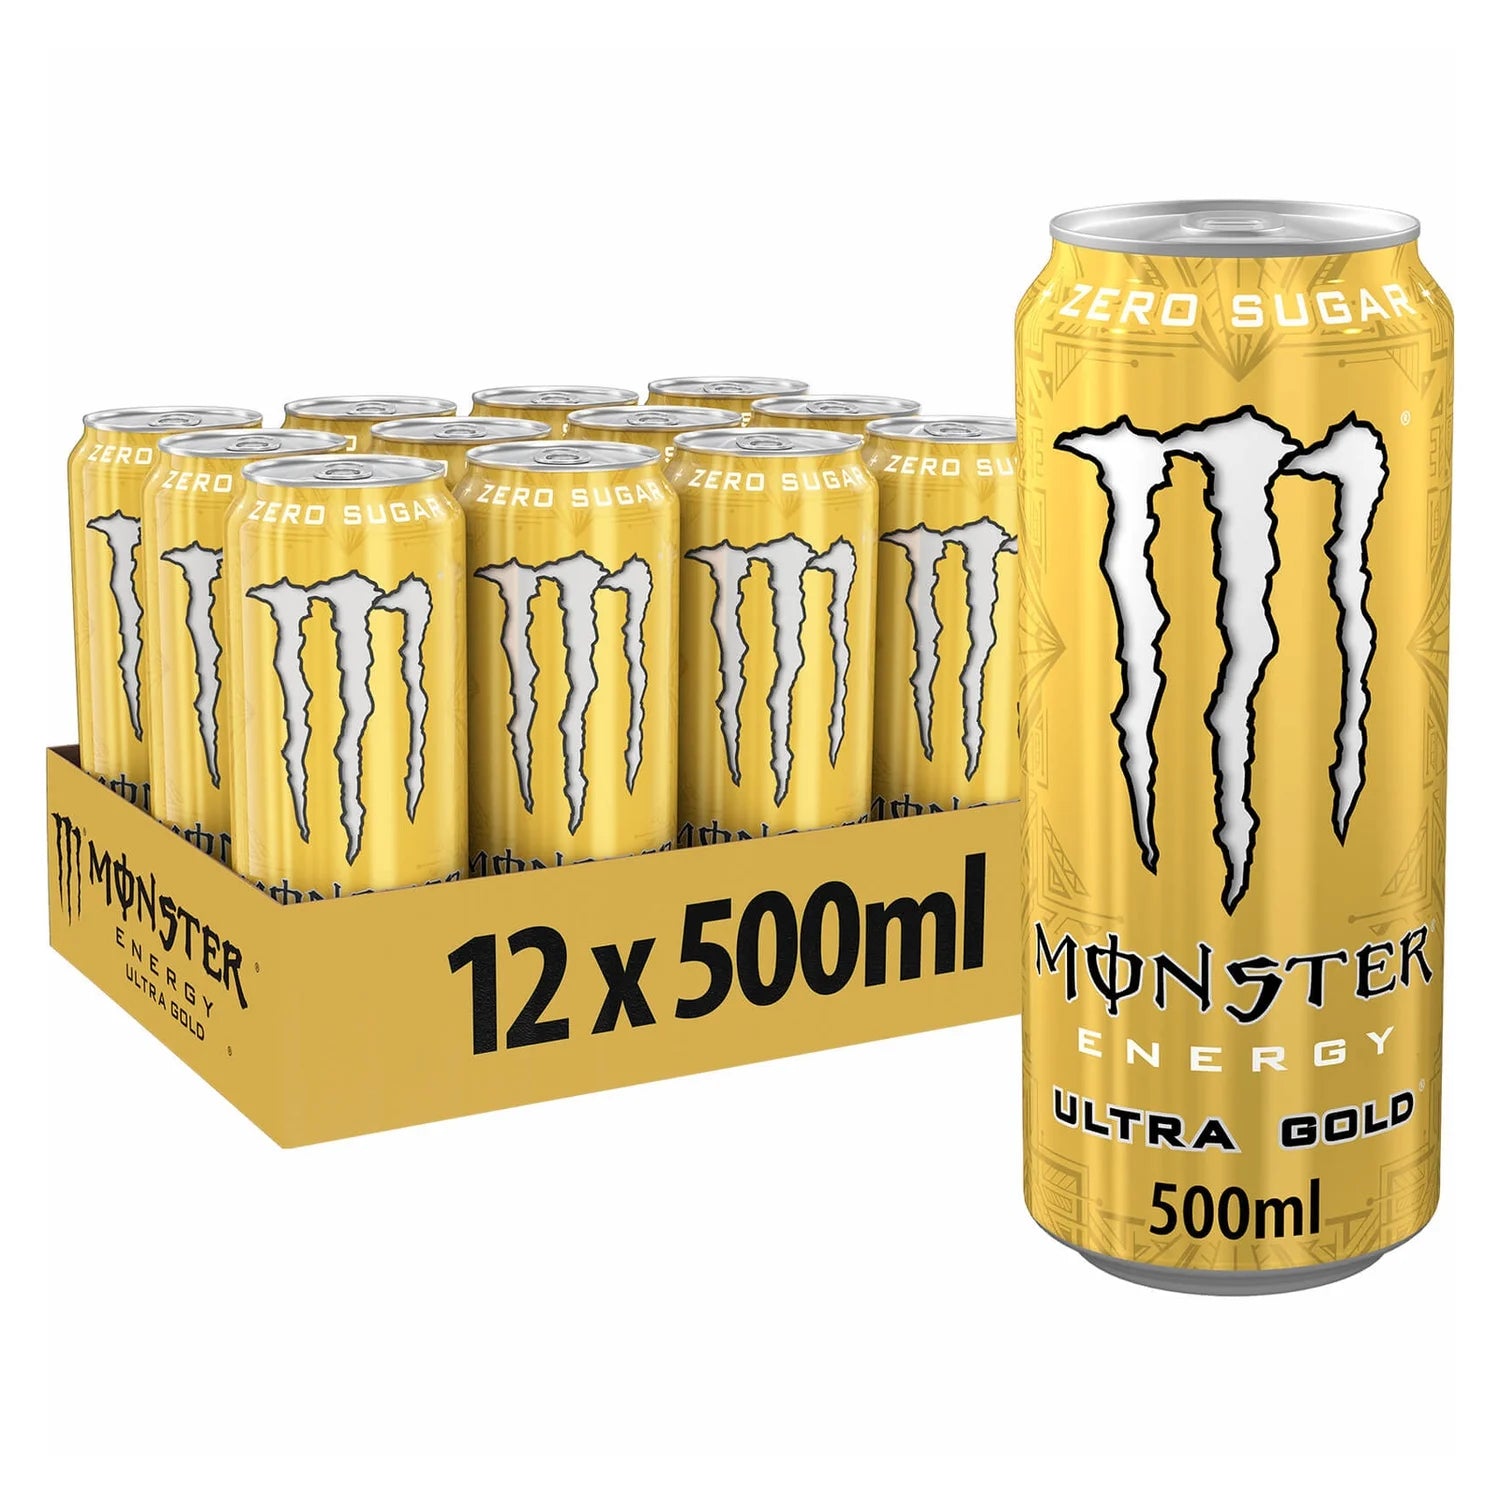 Monster Energy Drink Ultra Gold - 500ml - Case of 12